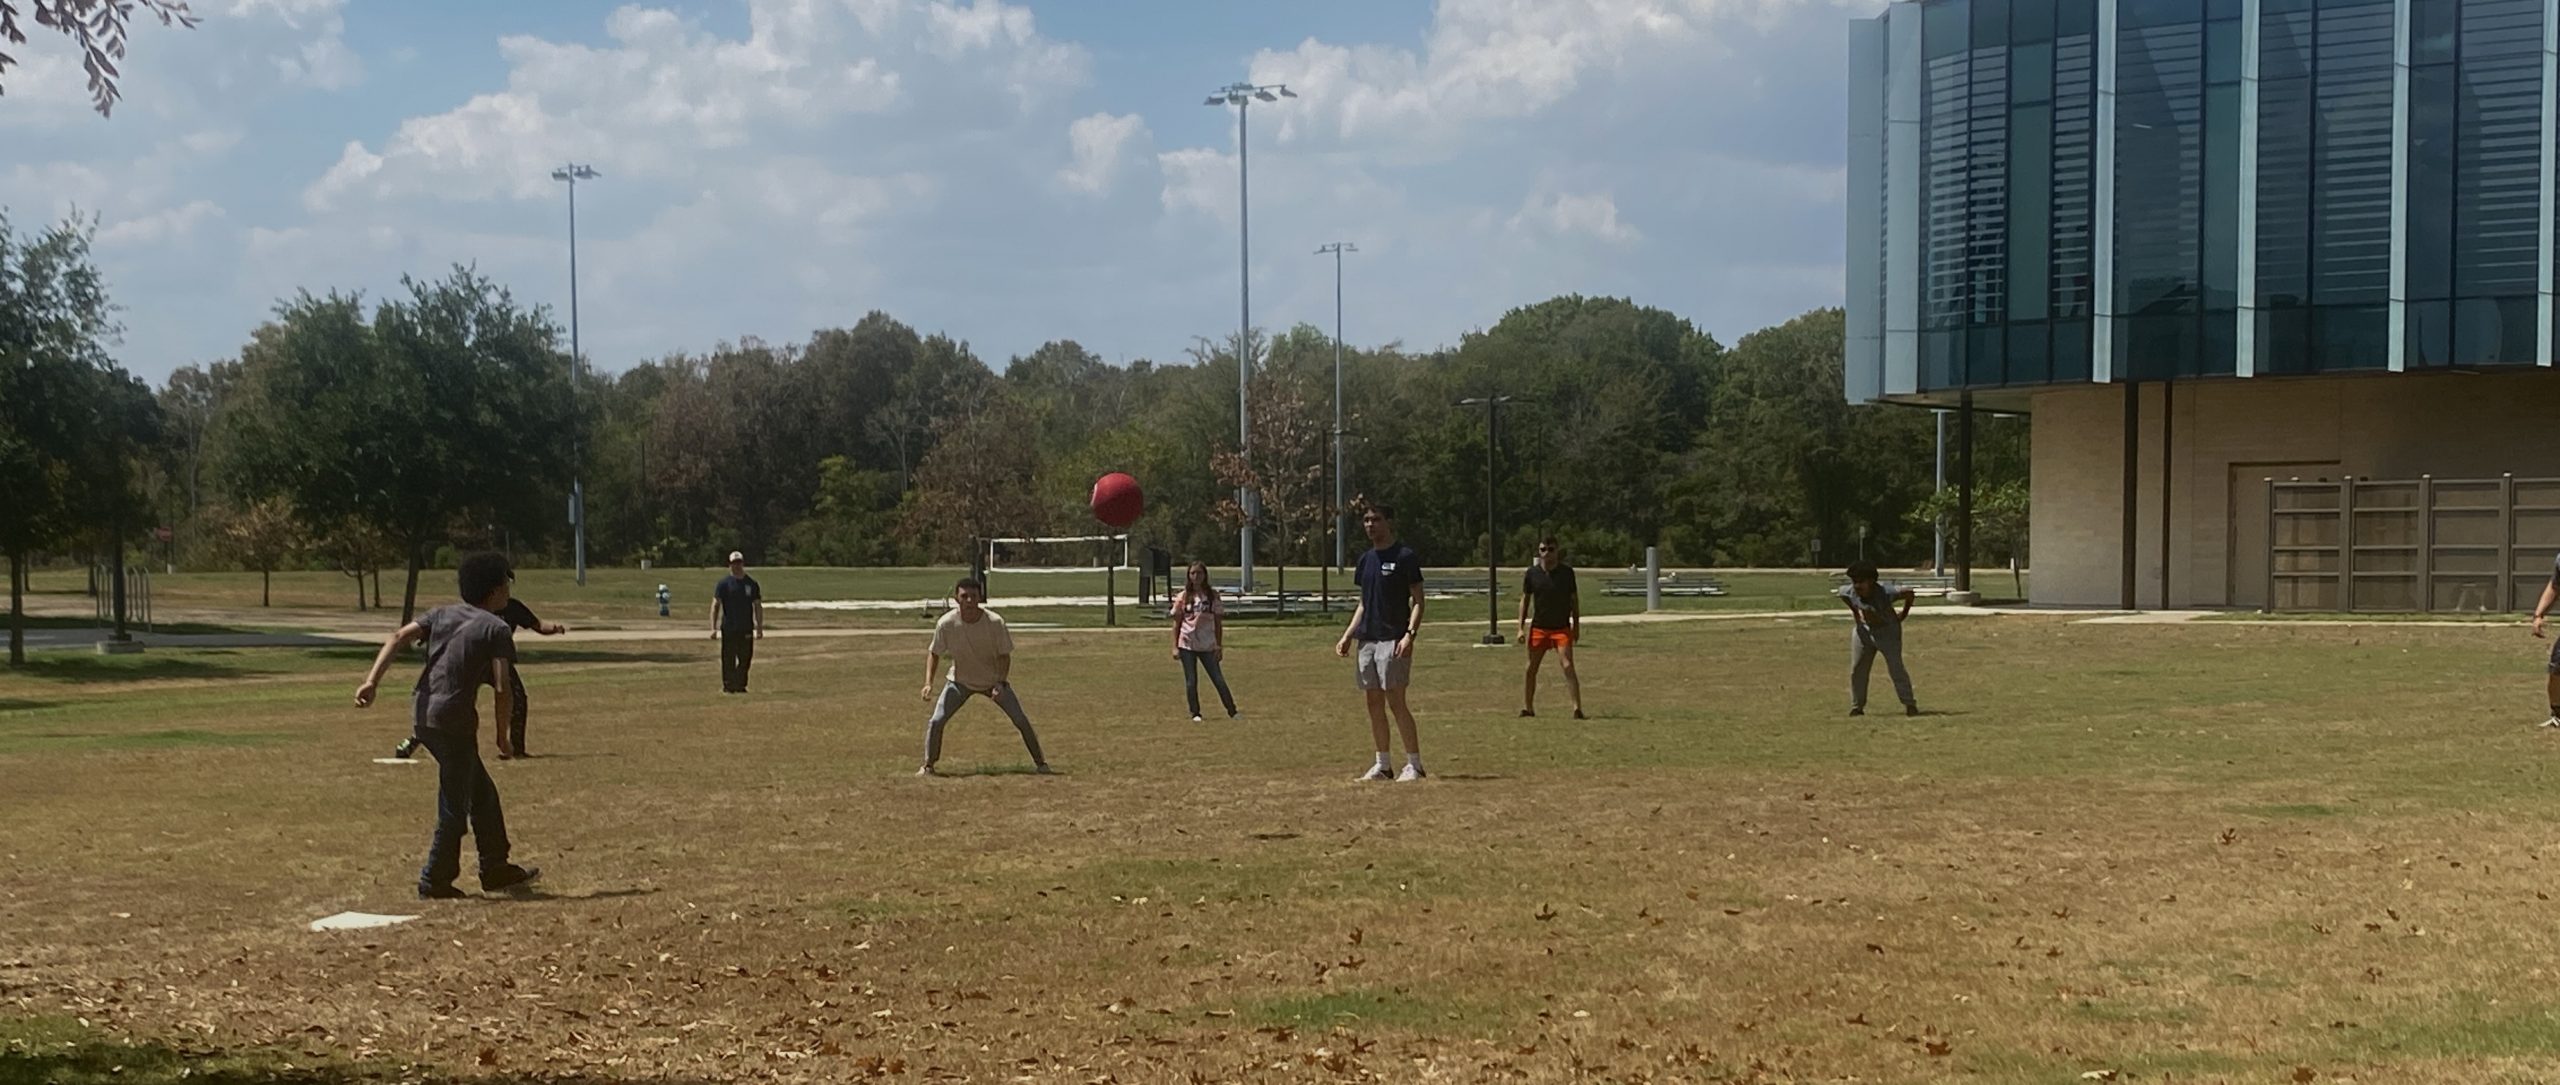 A group playing kickball outside.